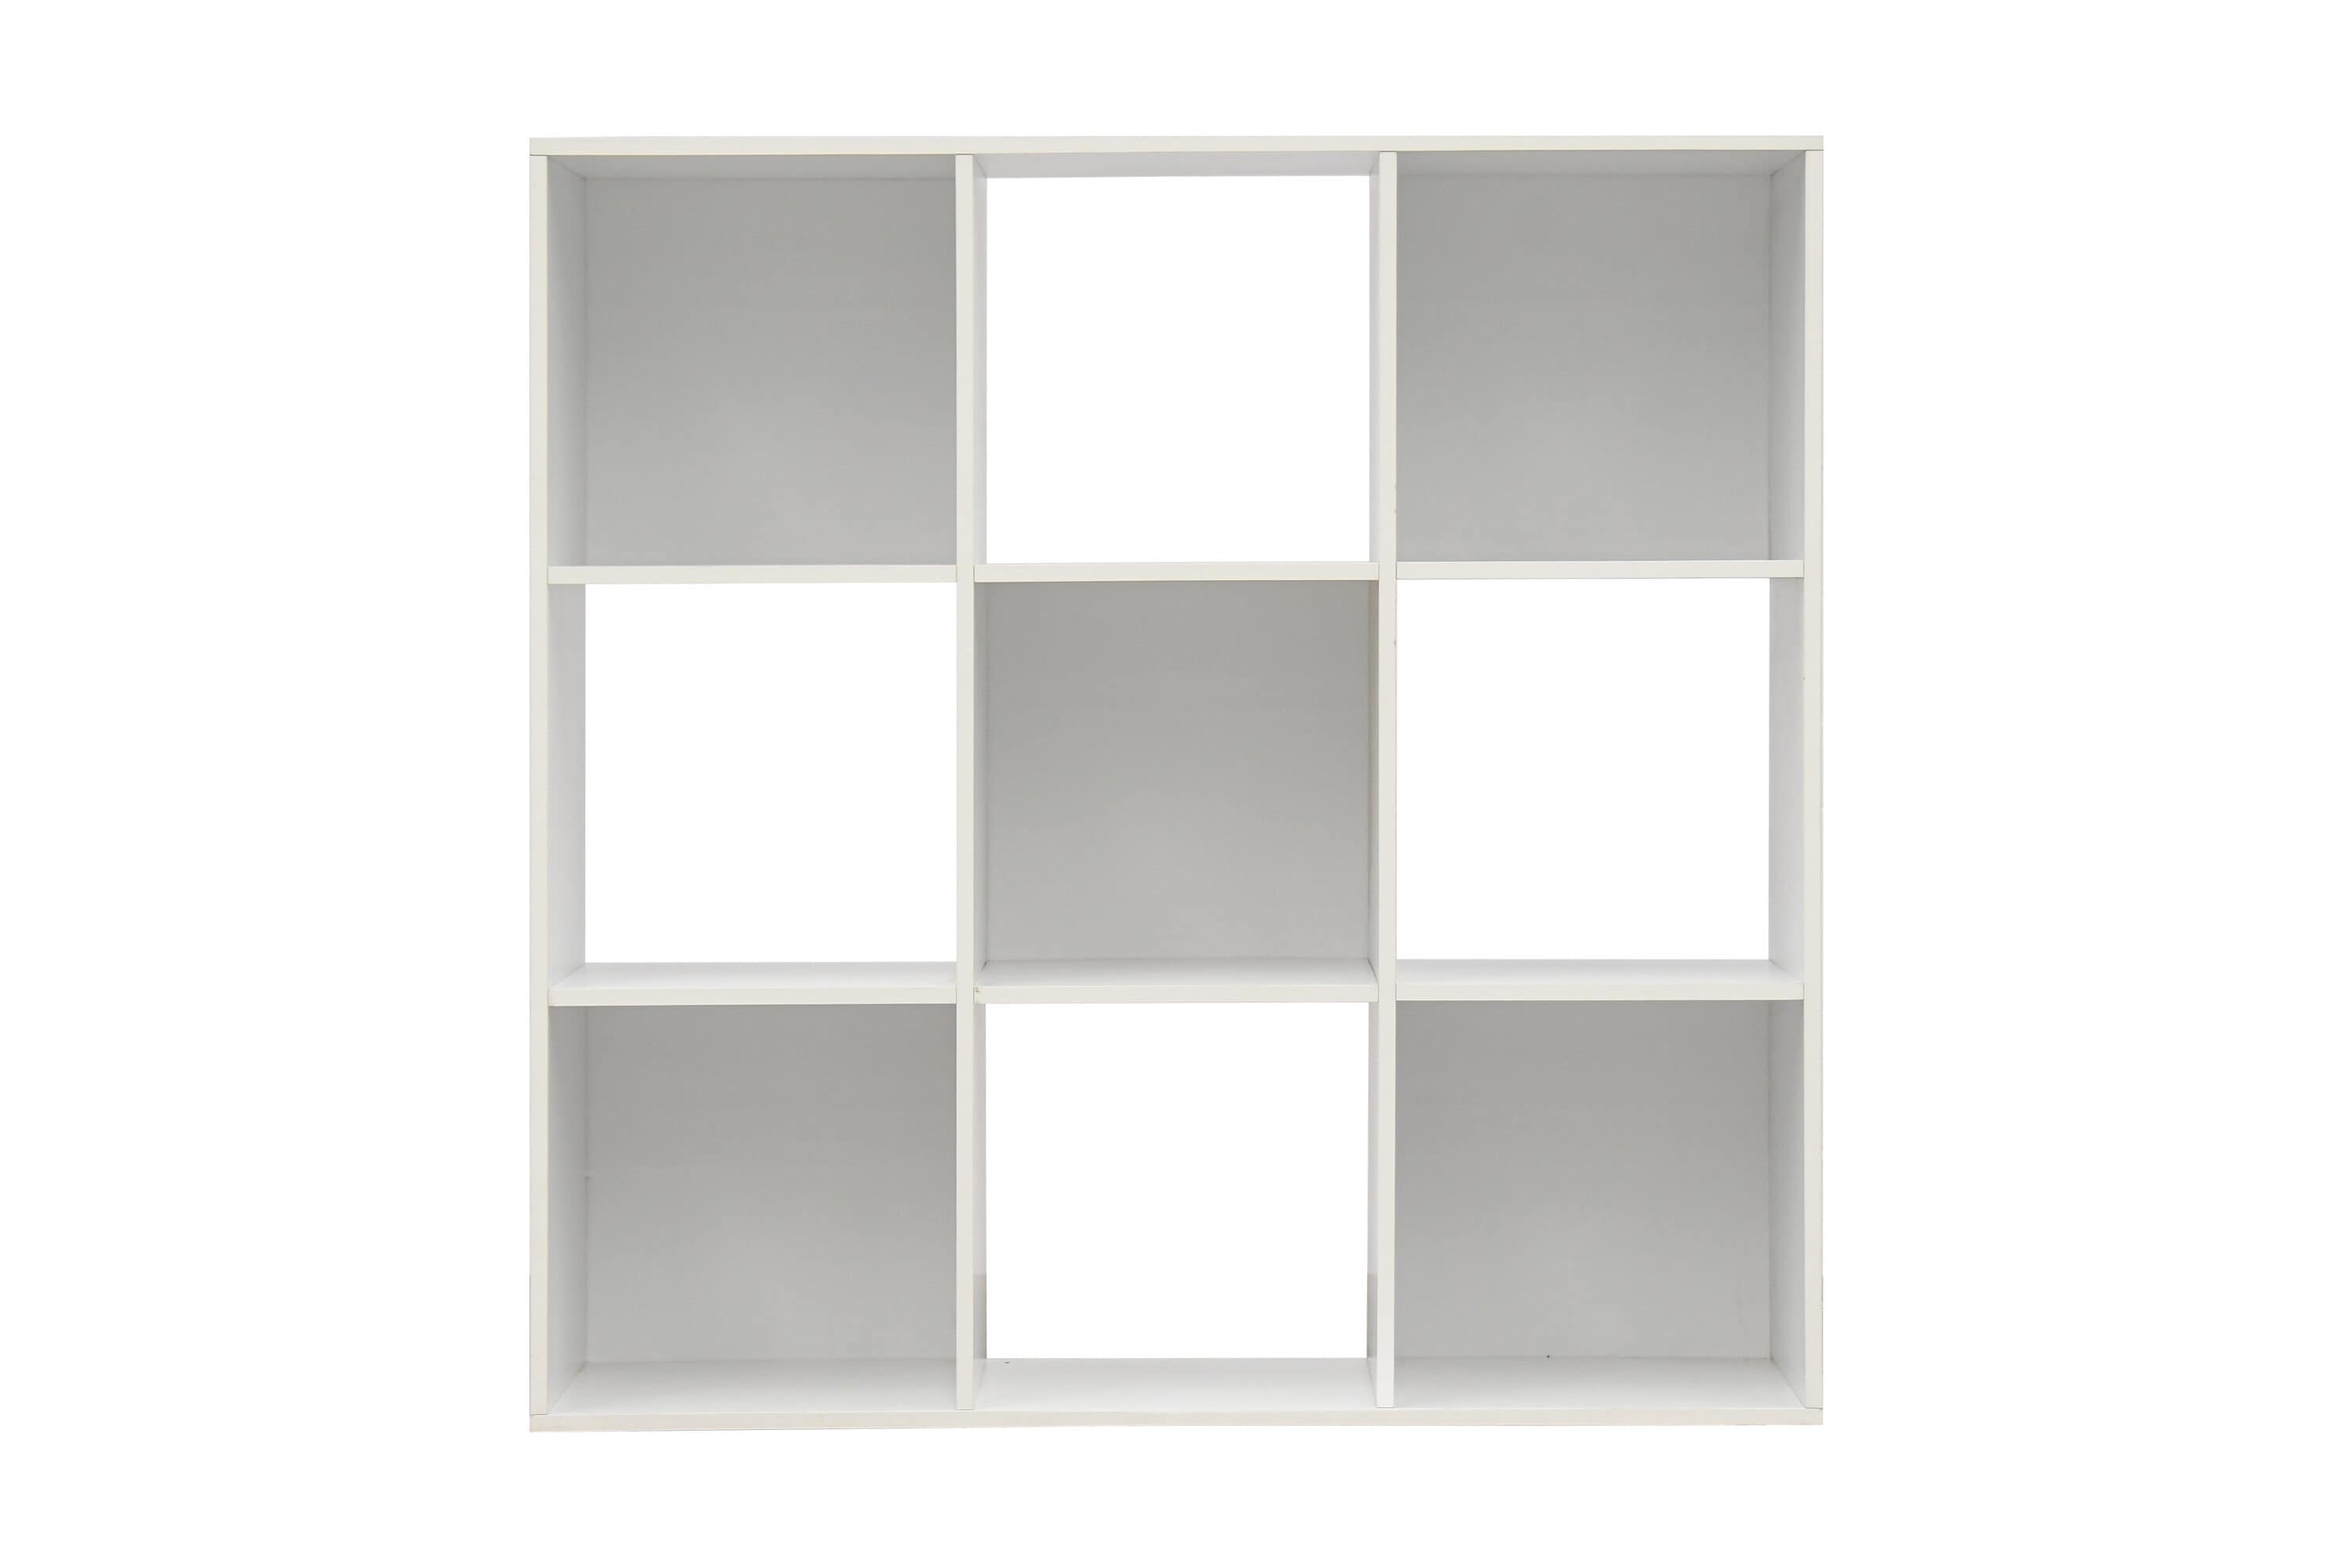 11 3 Cube Organizer Shelf Dark Brown - Room Essentials™